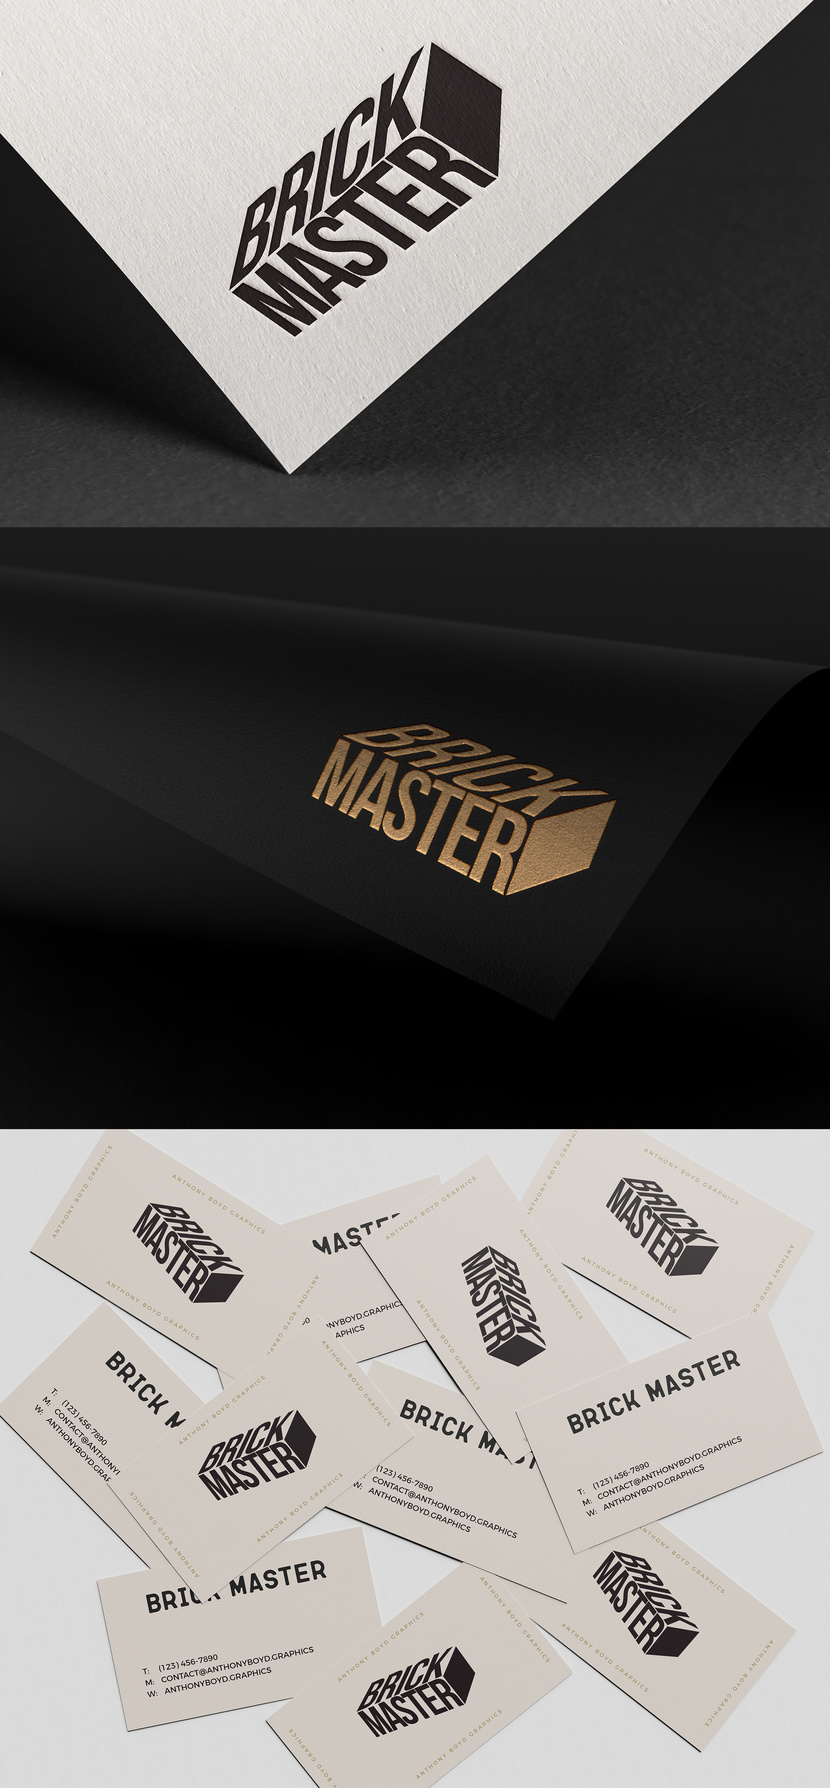 Brick master - Разработка логотипа и фирменного стиля для строительной компании